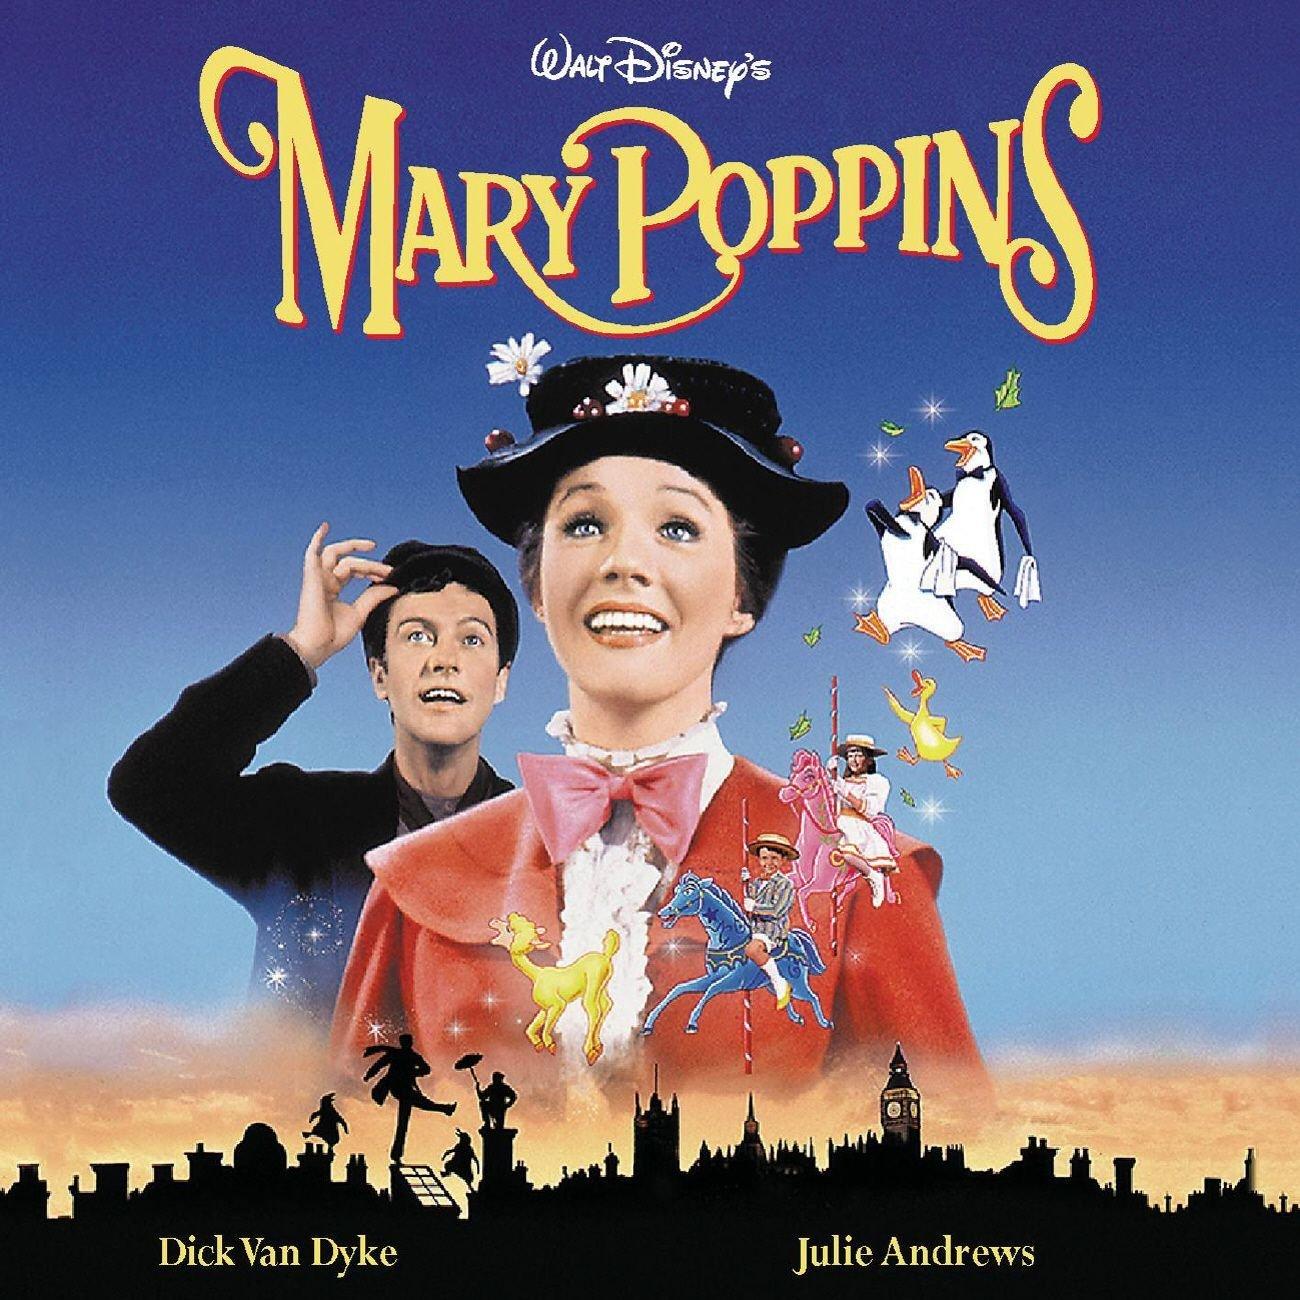 بوستر فيلم Mary Poppins 